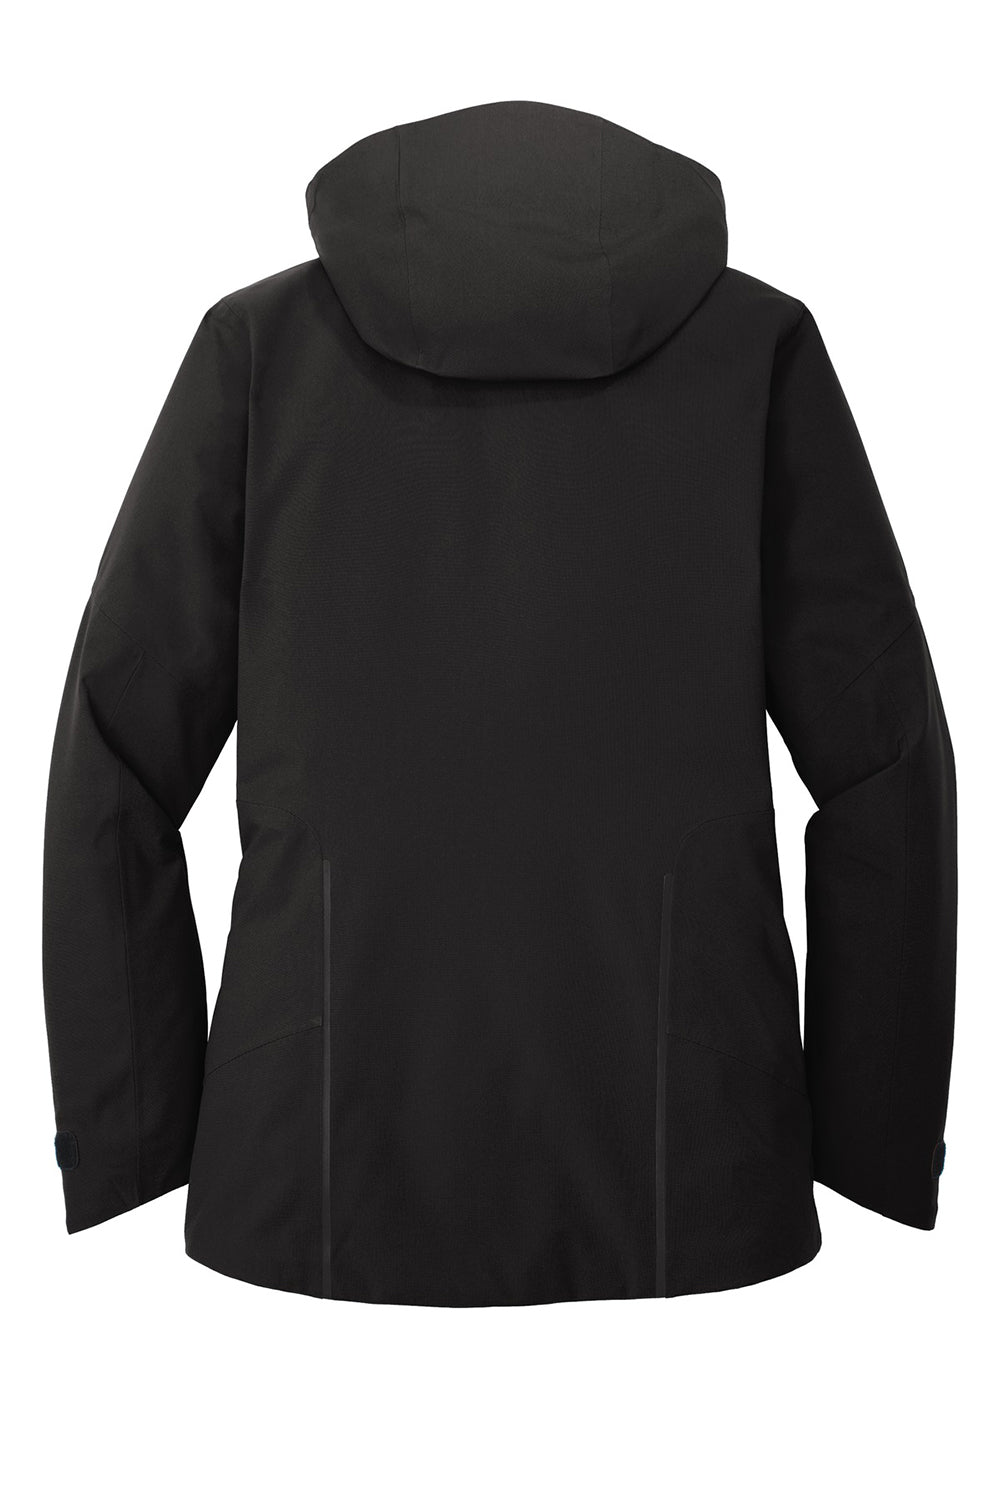 Eddie Bauer EB555 Womens WeatherEdge Plus Waterproof Full Zip Hooded Jacket Black Flat Back